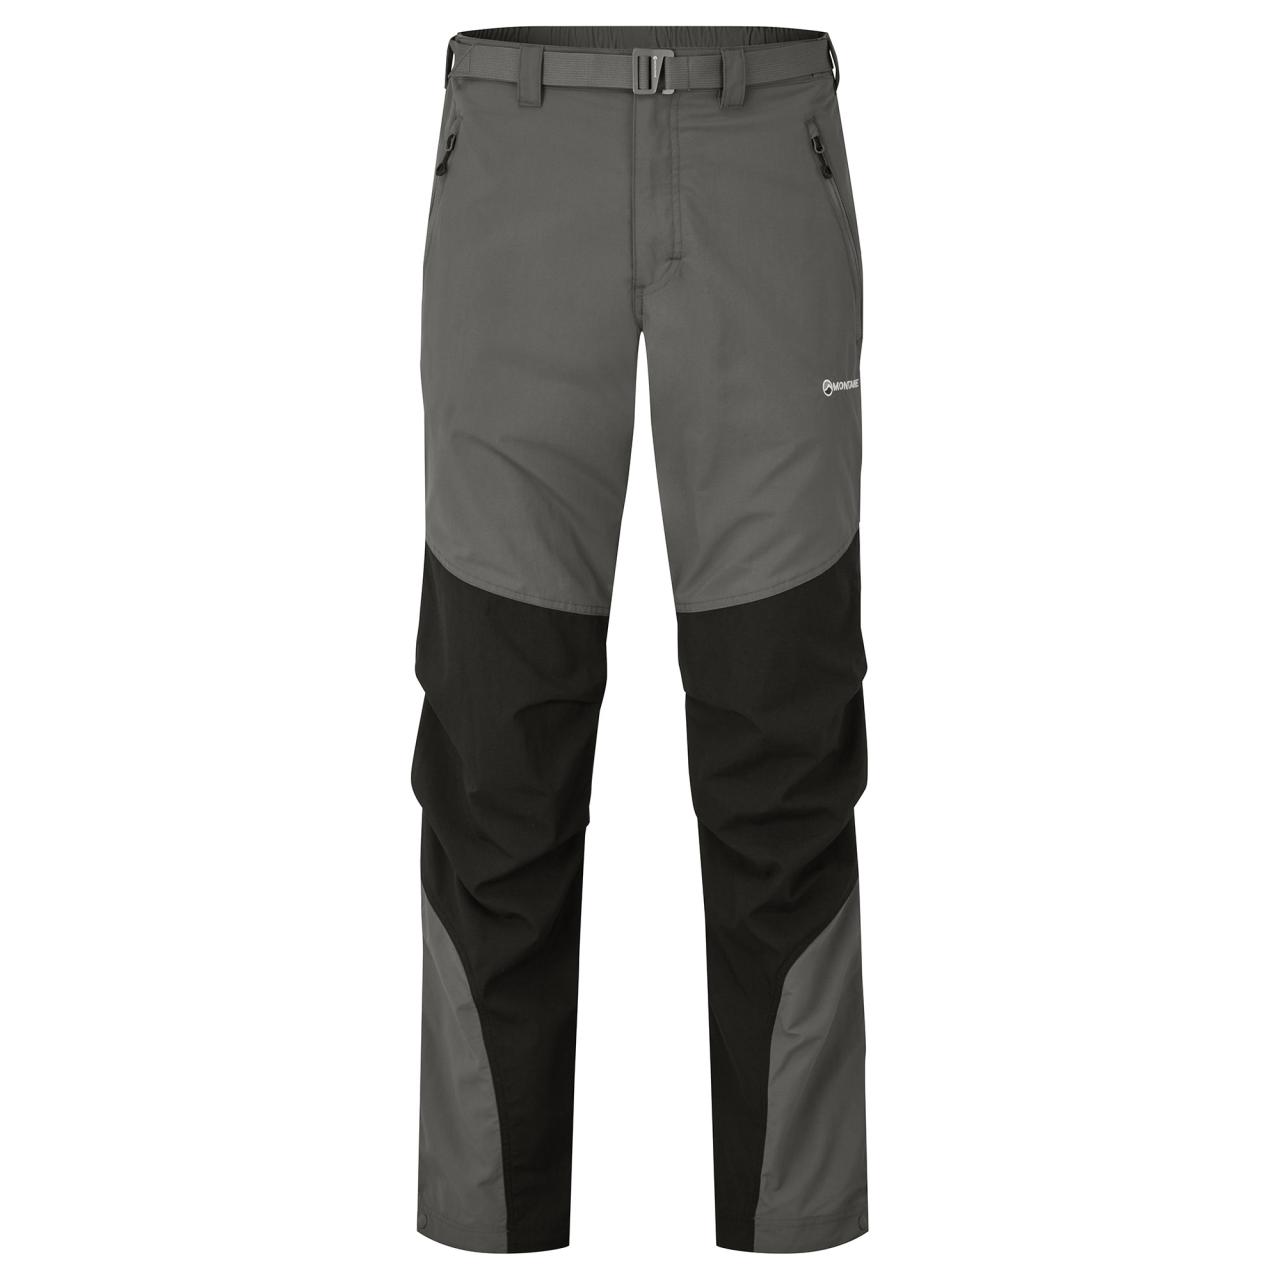 Montane pánské softshellové kalhoty Terra Pants - Zkrácené Nohavice Barva: graphite, Velikost: 38